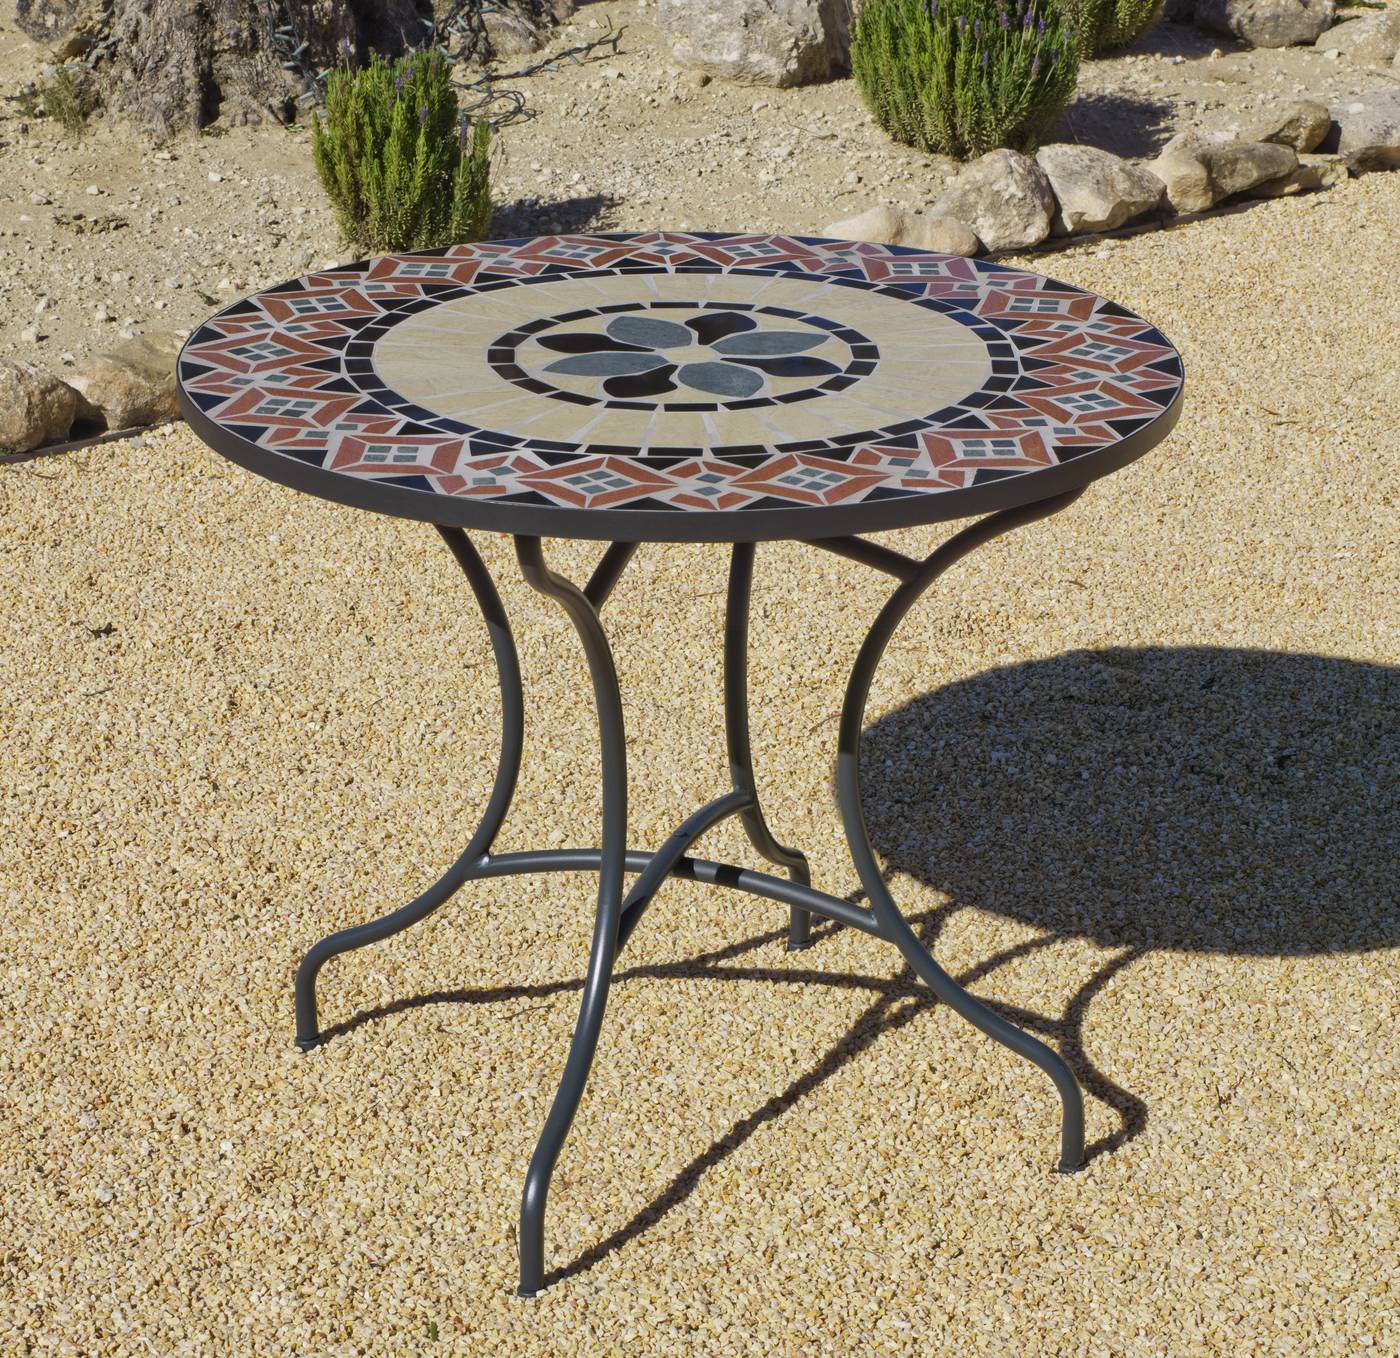 Set Mosaico Camel 90-4 - Conjunto para jardín color gris antracita: 1 mesa redonda 90 cm. de forja con panel mosaico + 4 sillones de acero y textilen